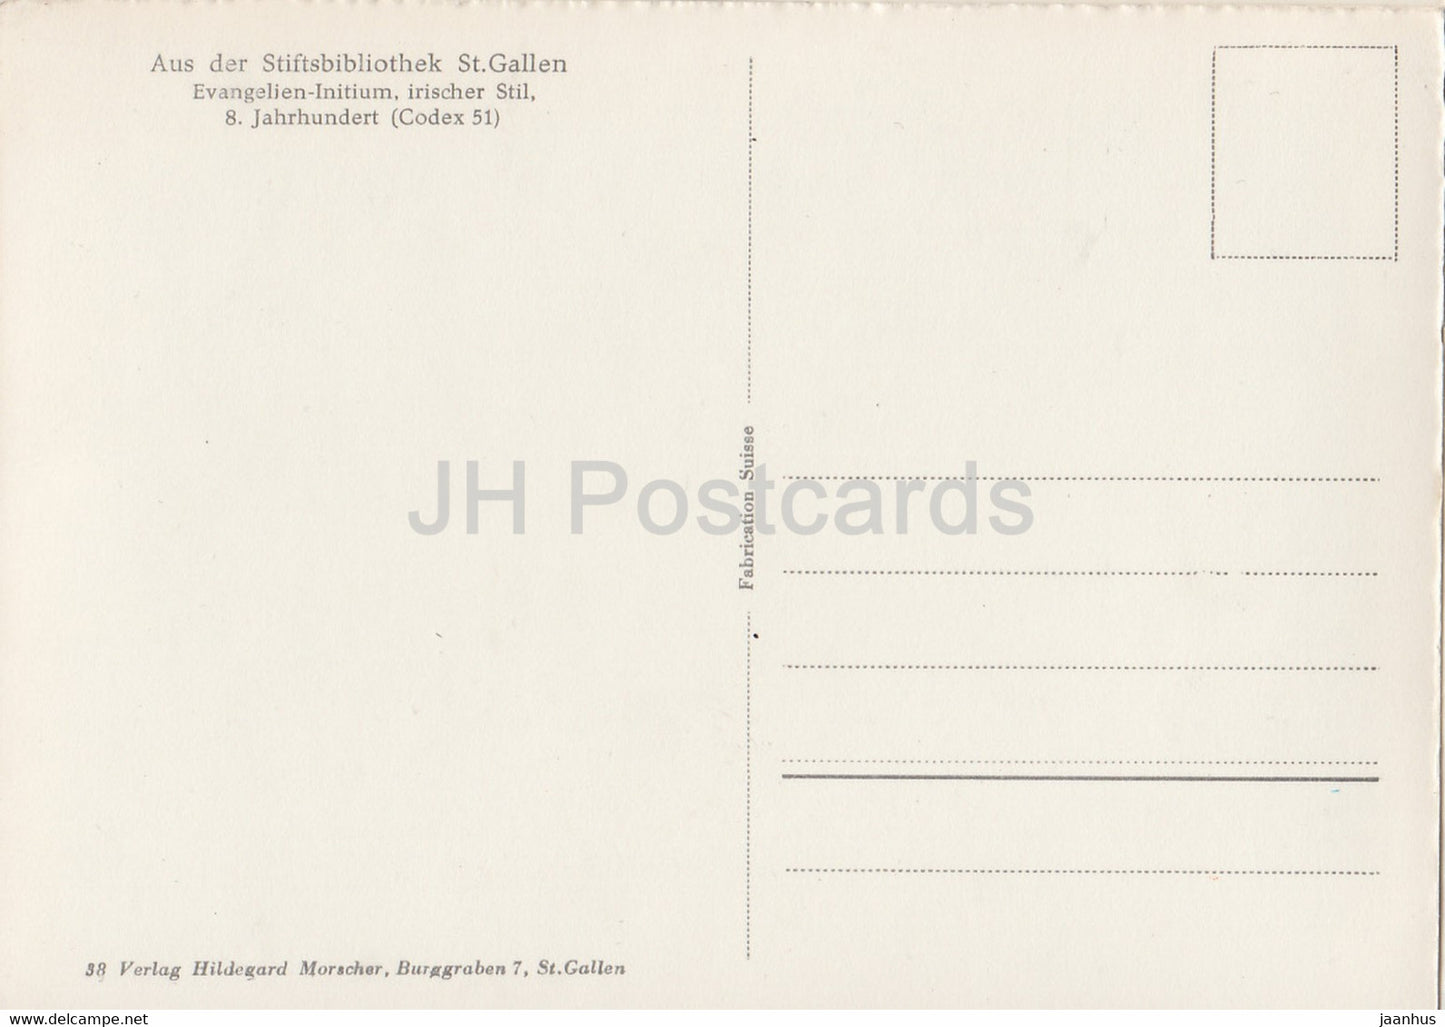 Evangelien Initium - Aus der Stiftsbibliothek St. Gallen - Bibliothek - alte Postkarte - Schweiz - unbenutzt